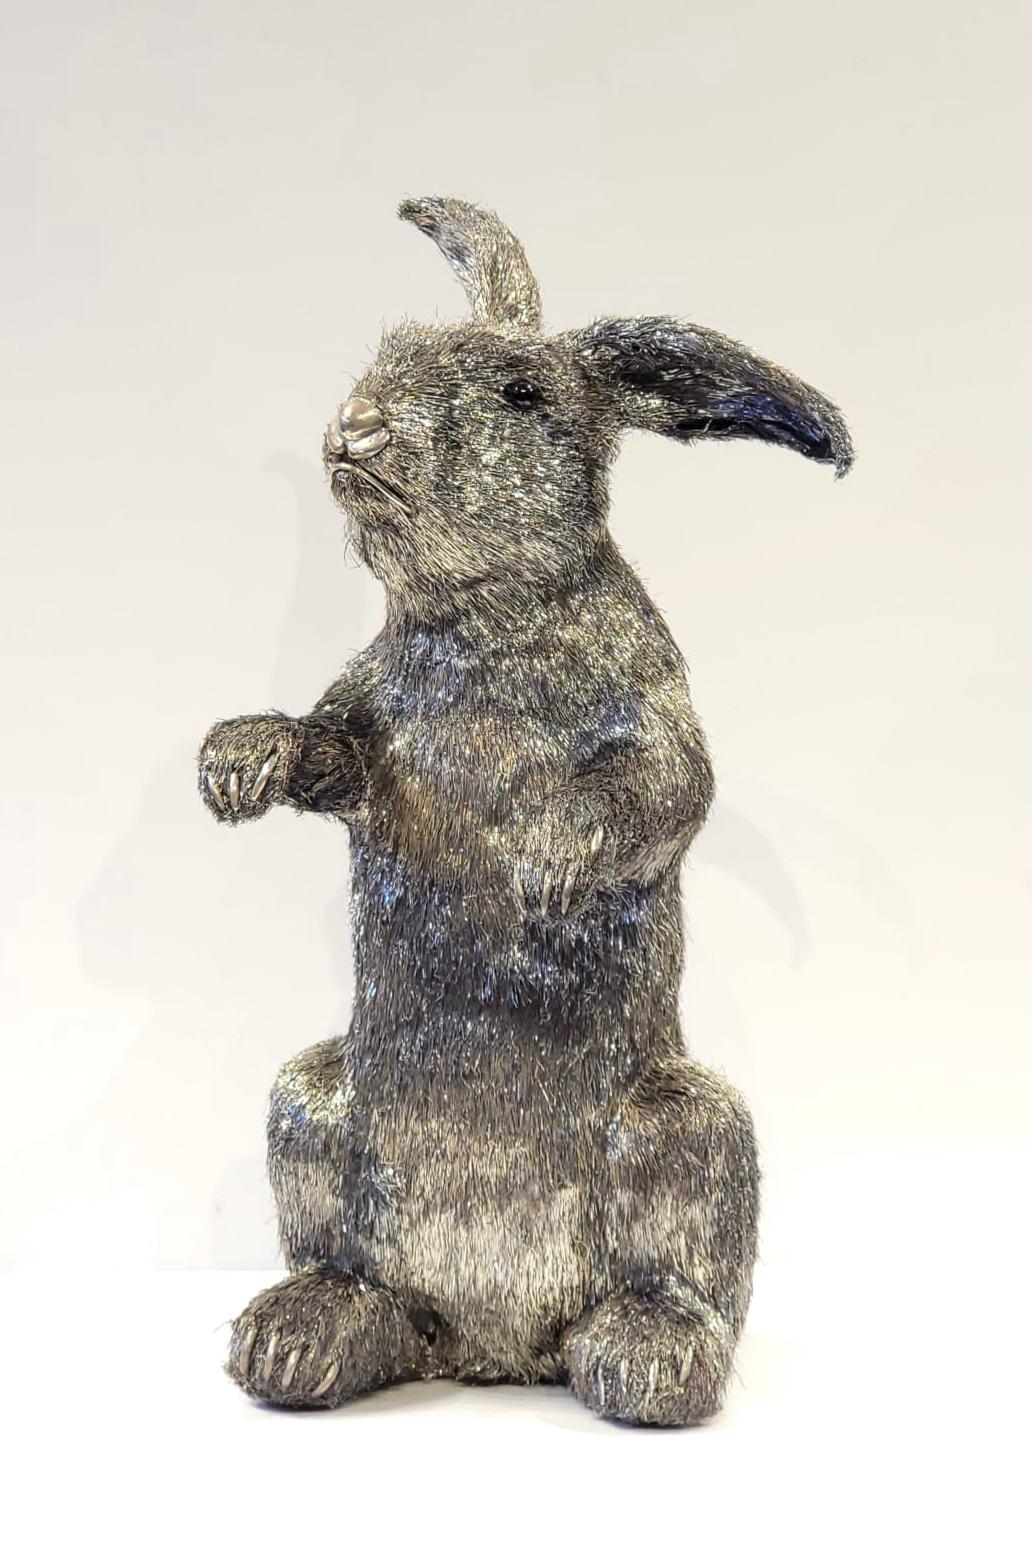 Mario Buccellati lebensgroßes silbernes Kaninchen. Ein lebensgroßes Silberkaninchen, das mit einer Technik gefertigt wurde, die als 